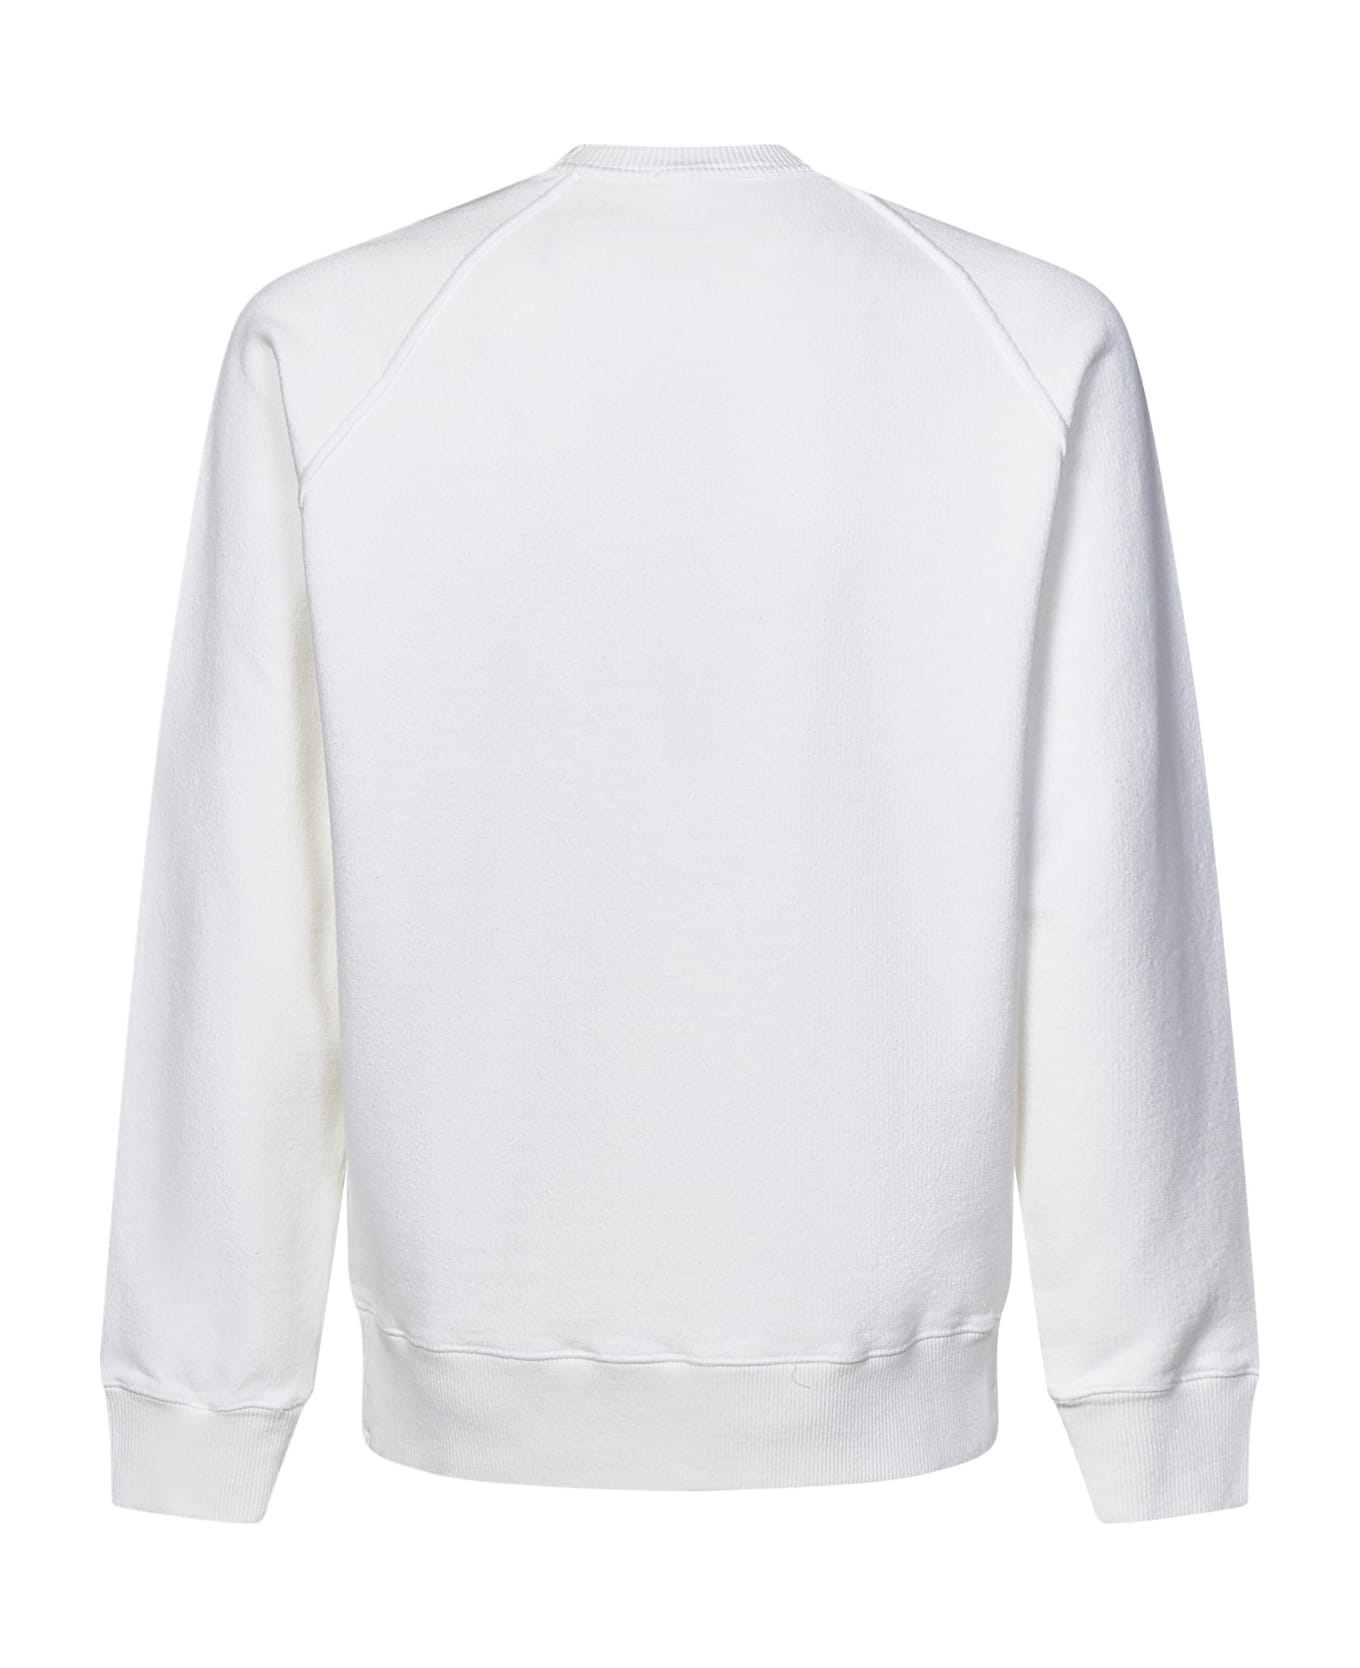 Stone Island Sweatshirt - White